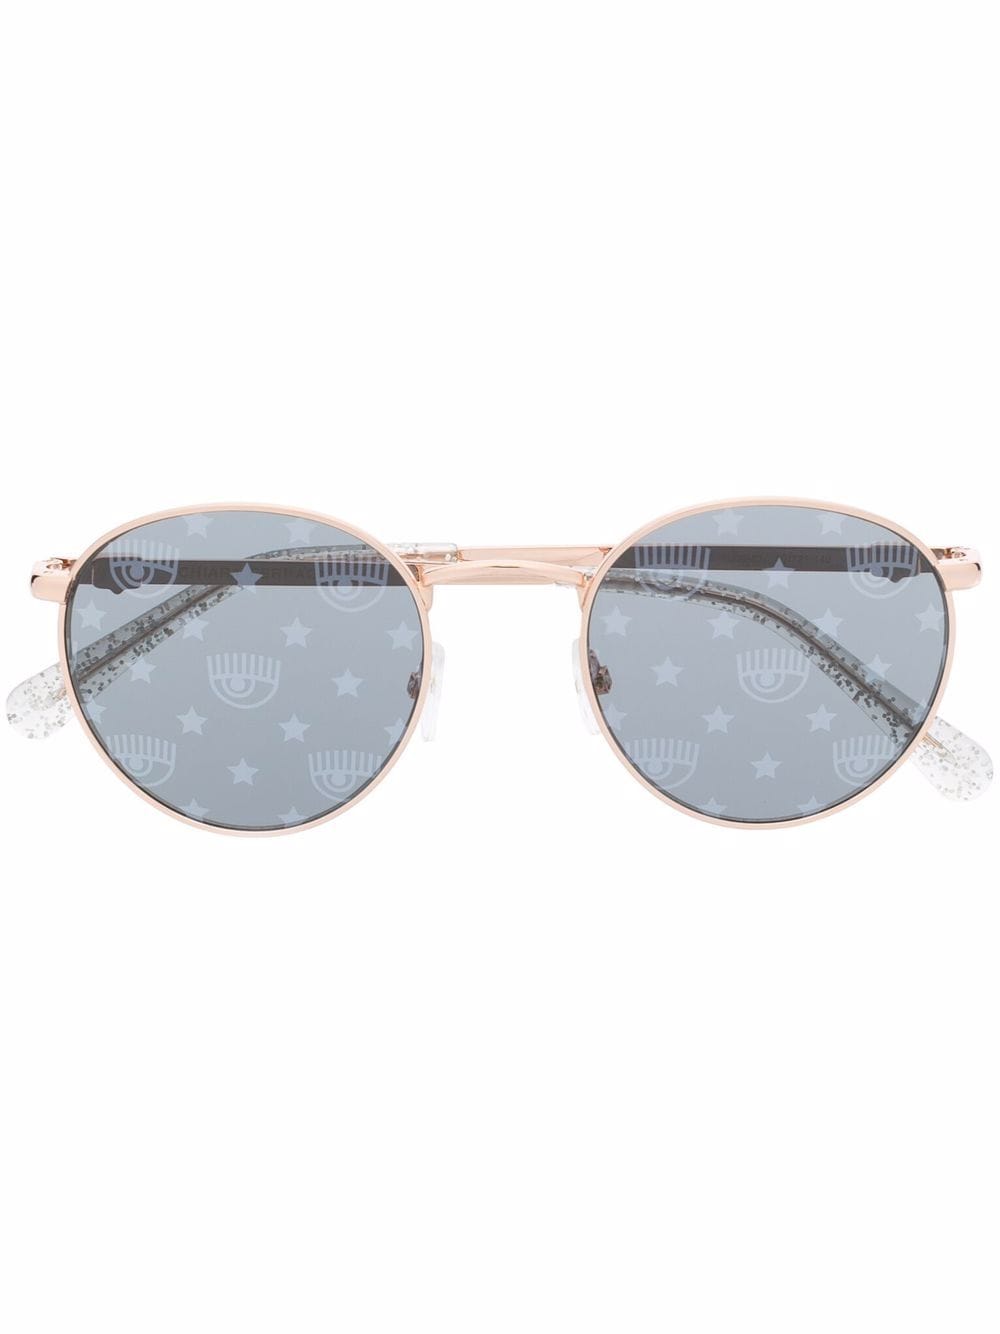 Chiara Ferragni CF 1002/S round frame sunglasses - Gold von Chiara Ferragni